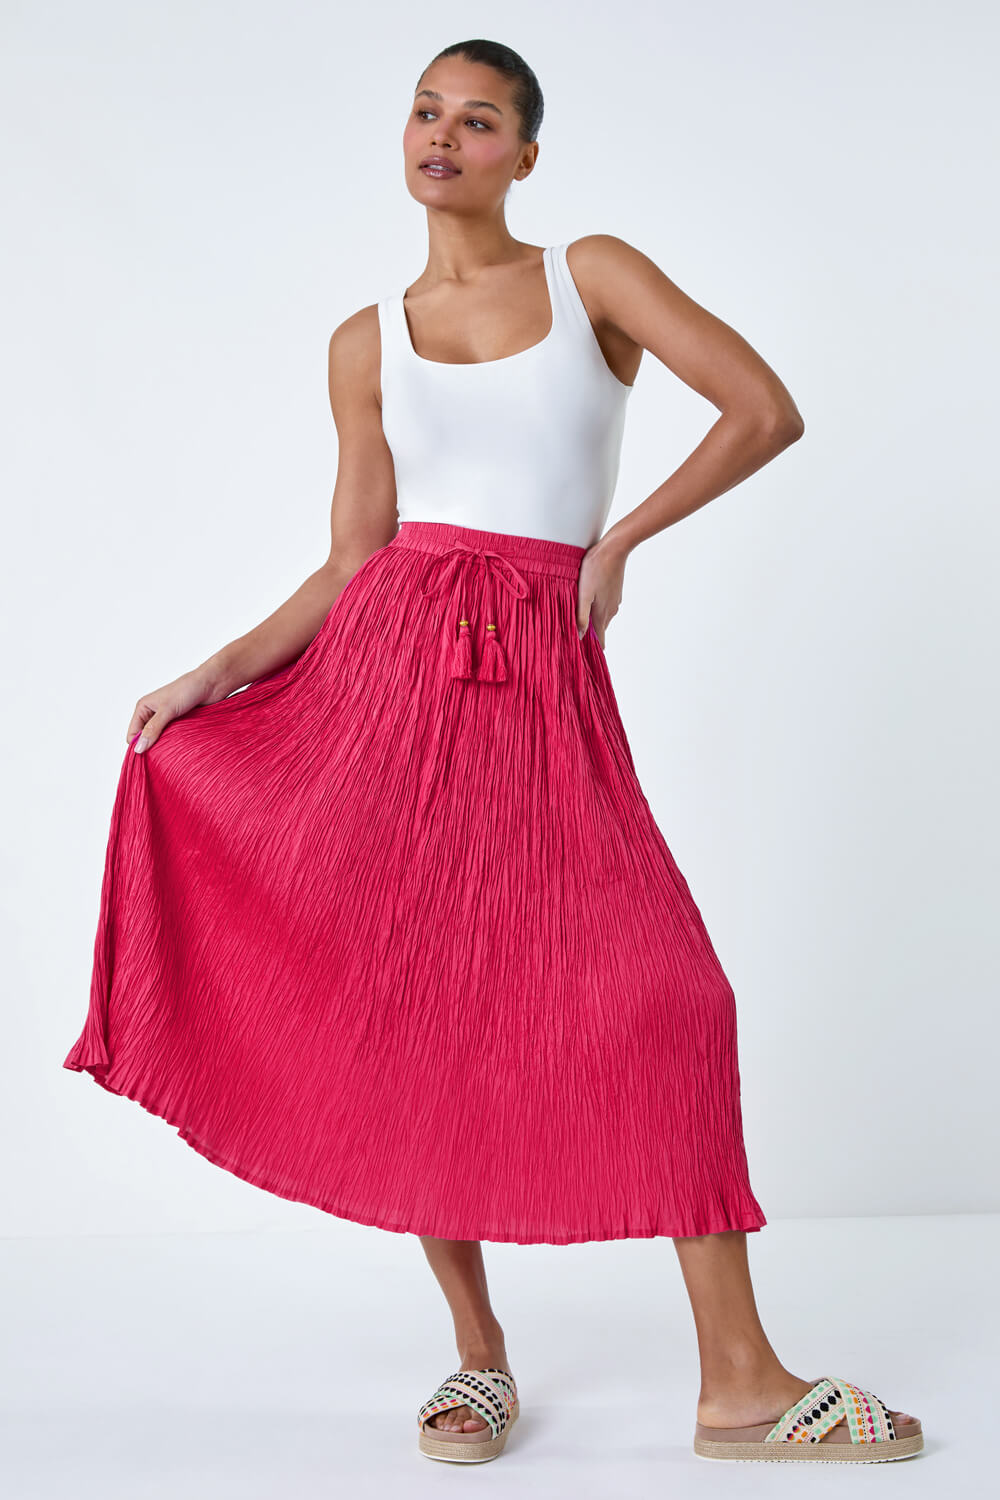 PINK Crinkle Cotton Textured Tassel Midi Skirt, Image 2 of 5